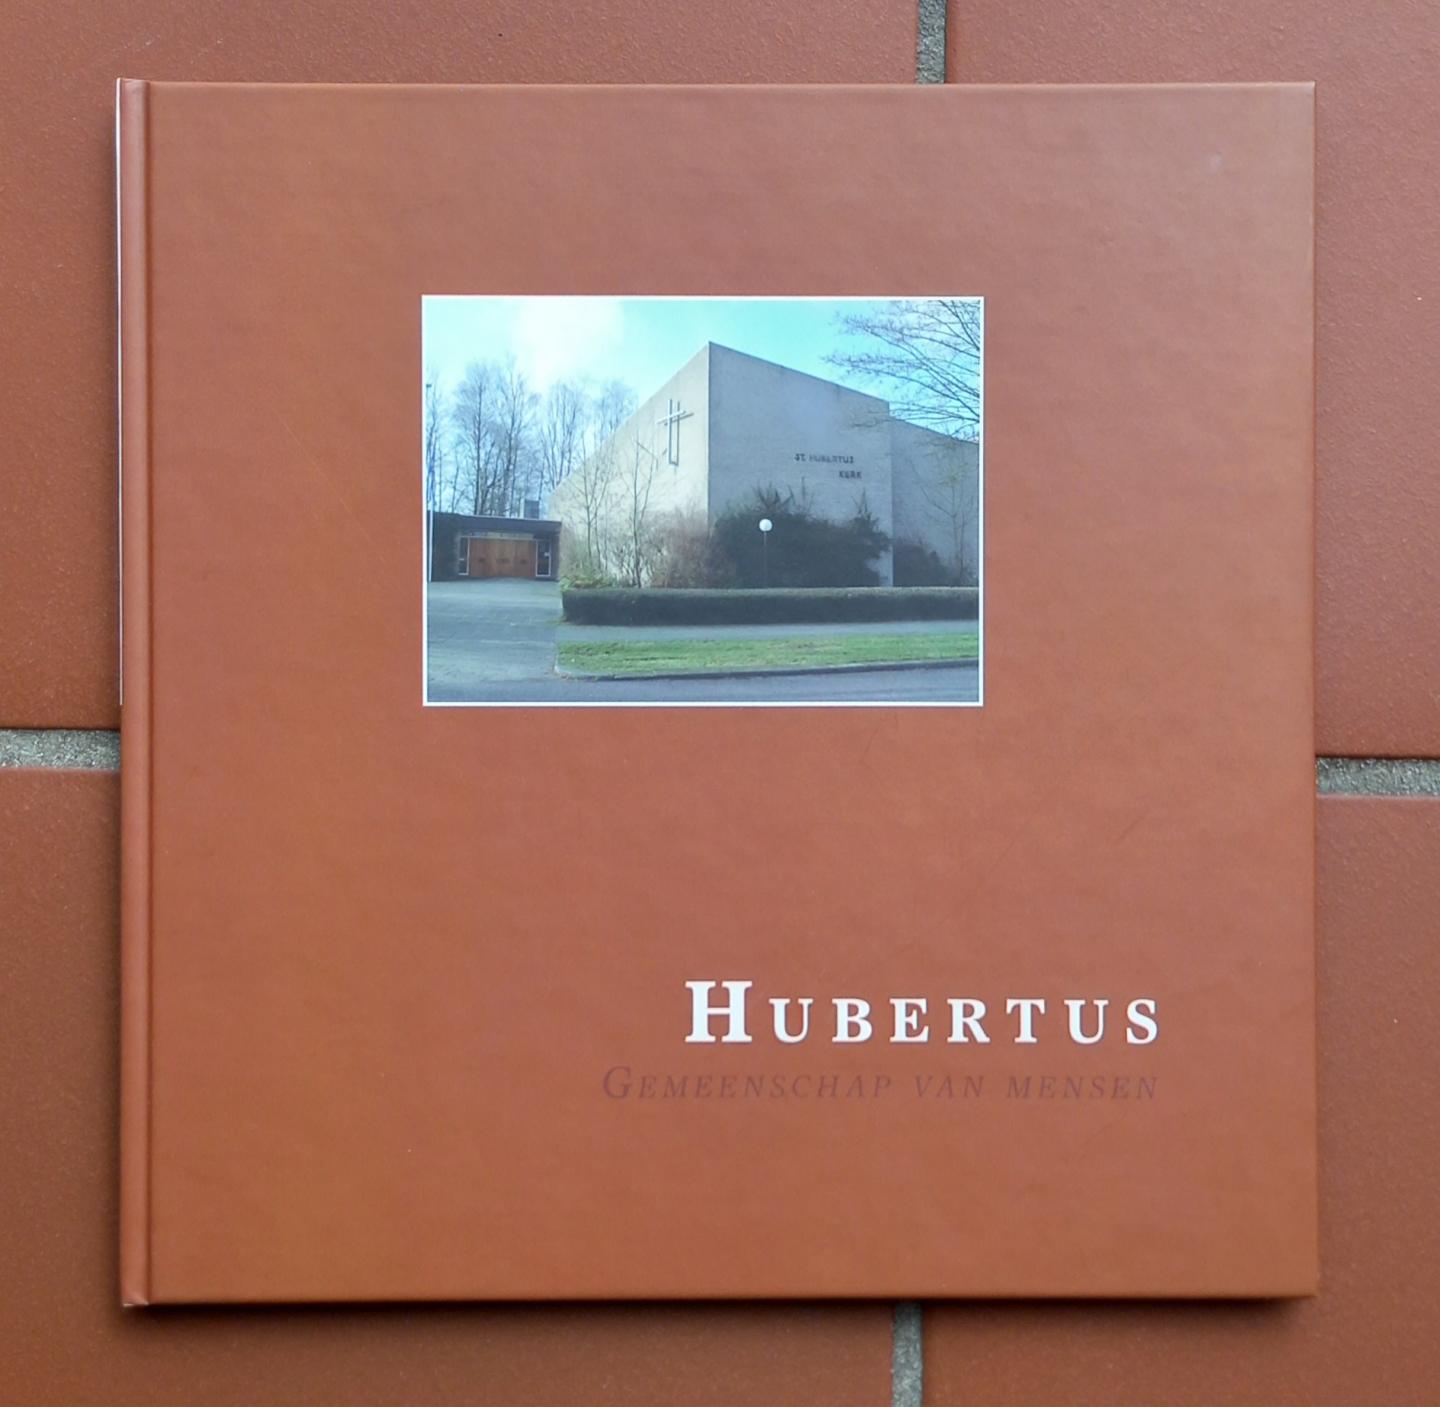 Auteur (onbekend) - Hubertus, Gemeenschap van mensen [RK Hubertuskerk - Apeldoorn 1959-2009]